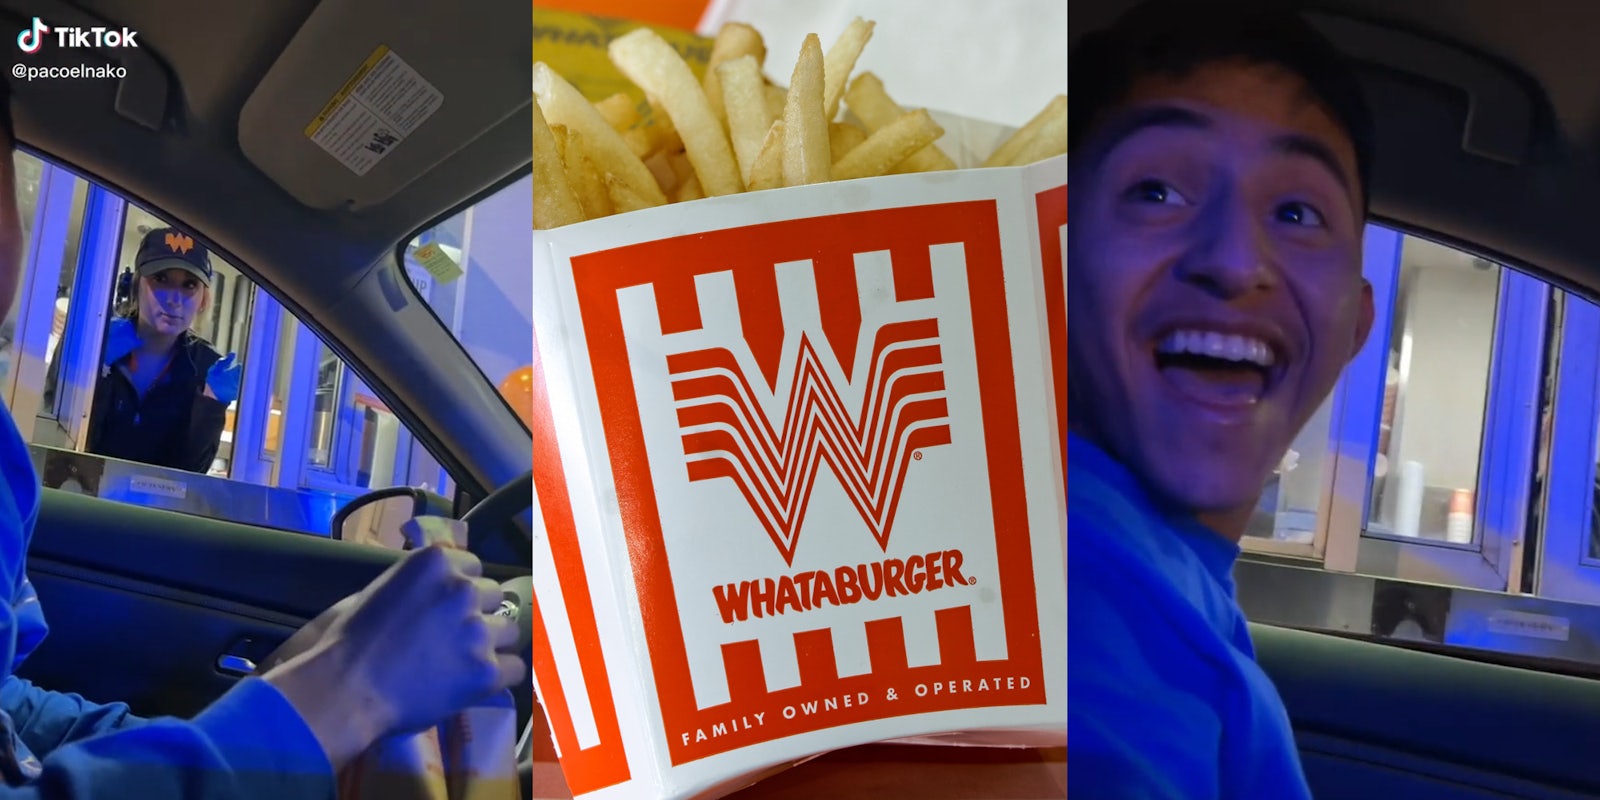 Whataburger drive thru worker (l) Whataburger fries (c) Man smiling in car (r)